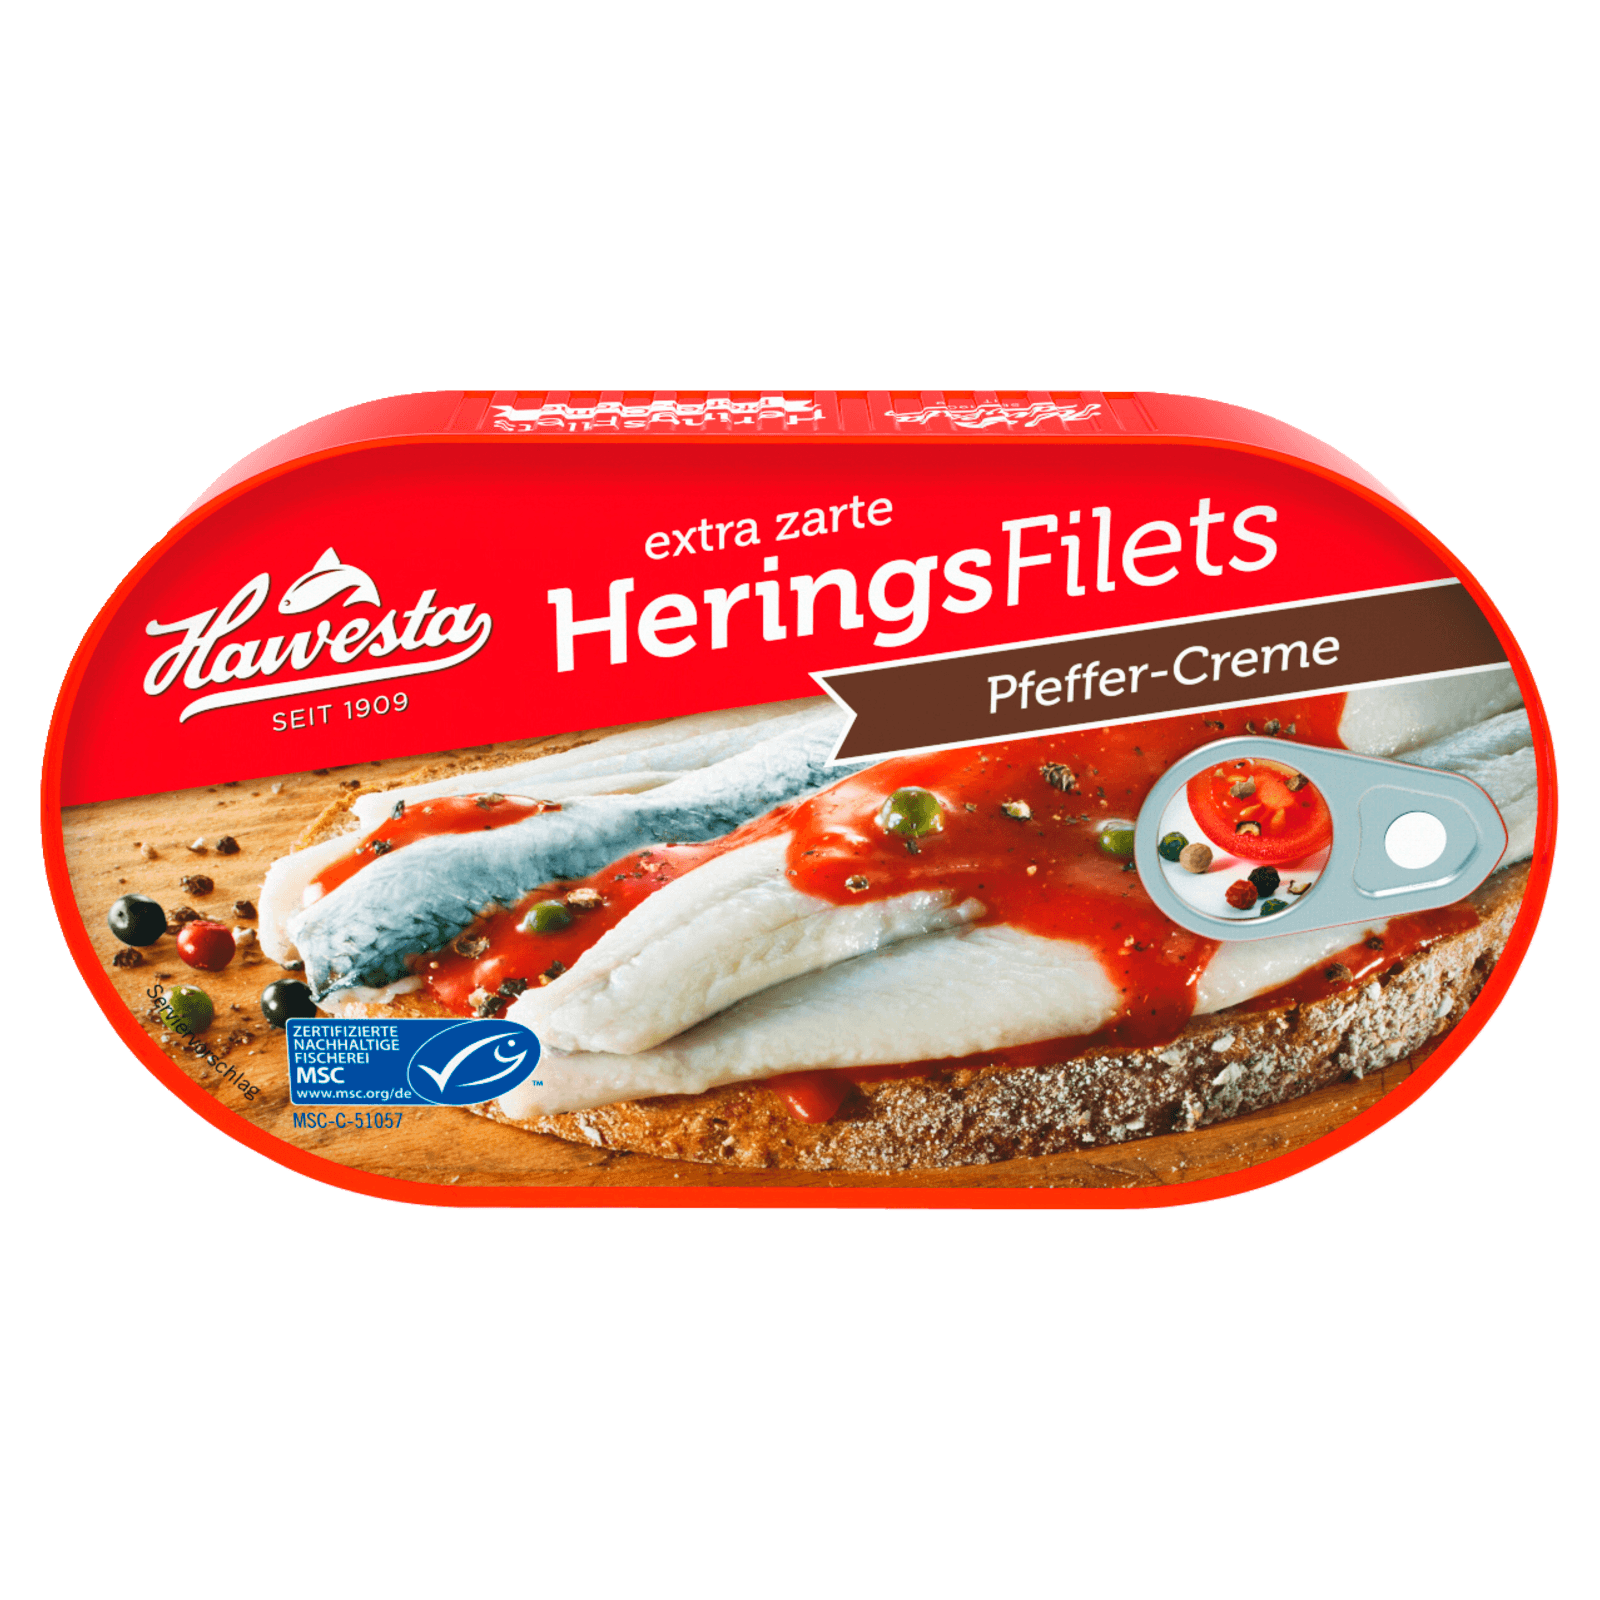 Hawesta Heringsfilets in Pfeffercreme 200g  für 2.29 EUR